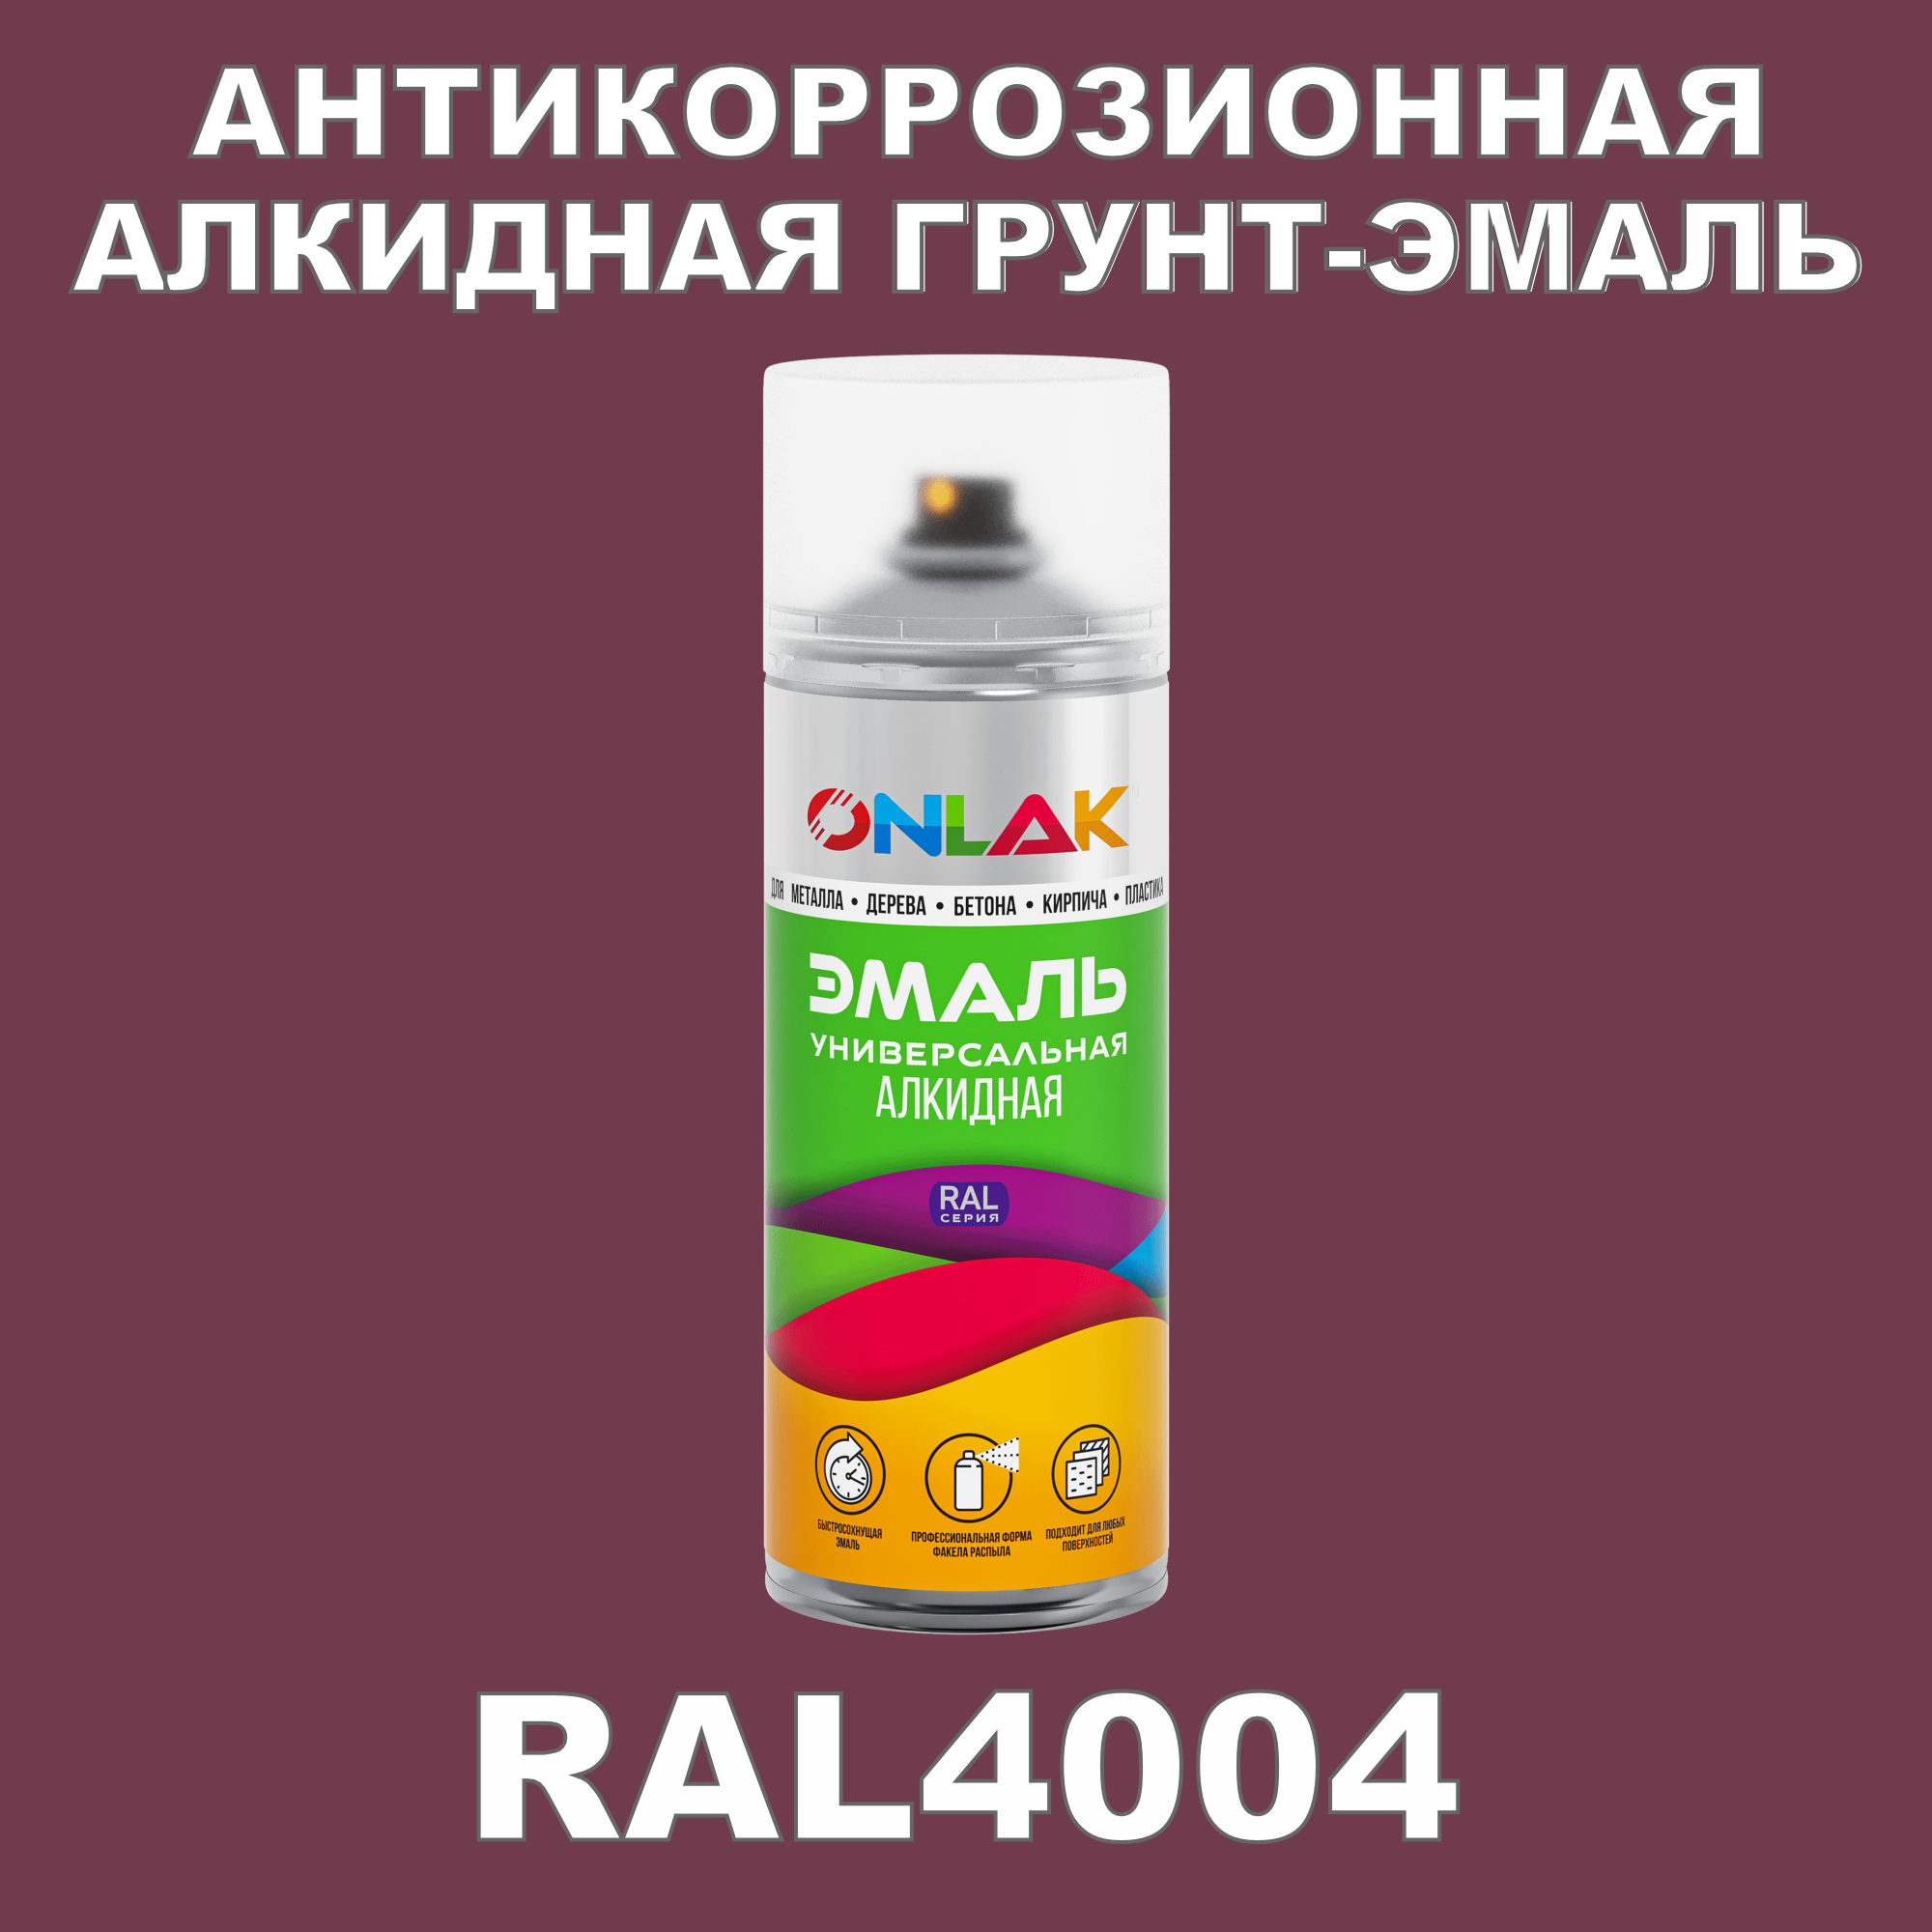 Антикоррозионная грунт-эмаль ONLAK RAL 4004,фиолетовый,657 мл рюкзак на молнии 2 наружных кармана фиолетовый